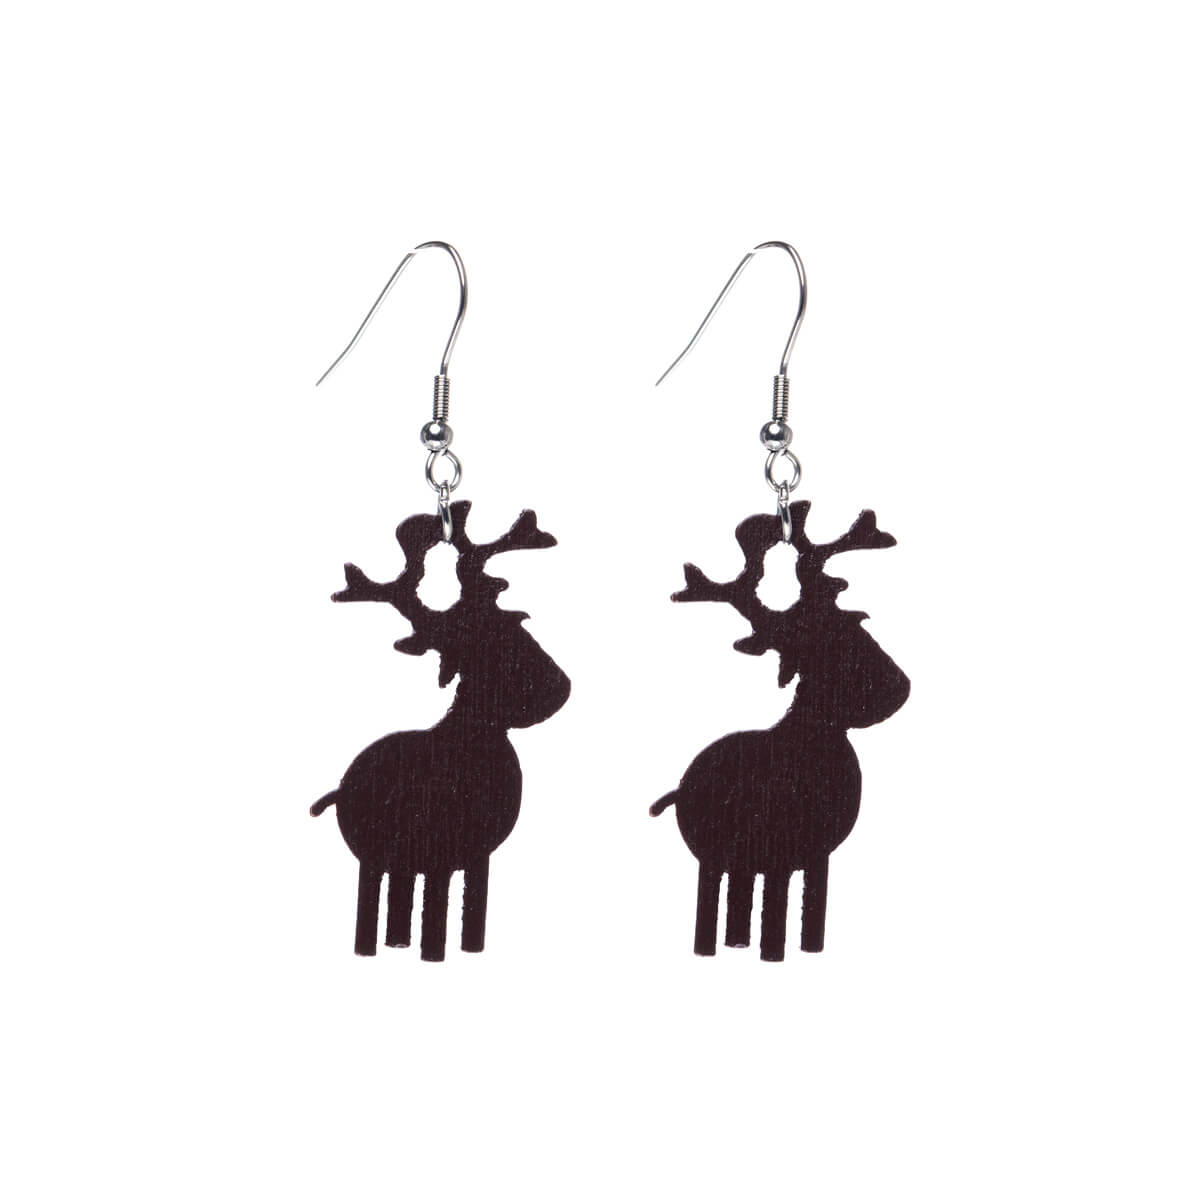 Wooden reindeer earrings - Made in Finland (Steel 316L)